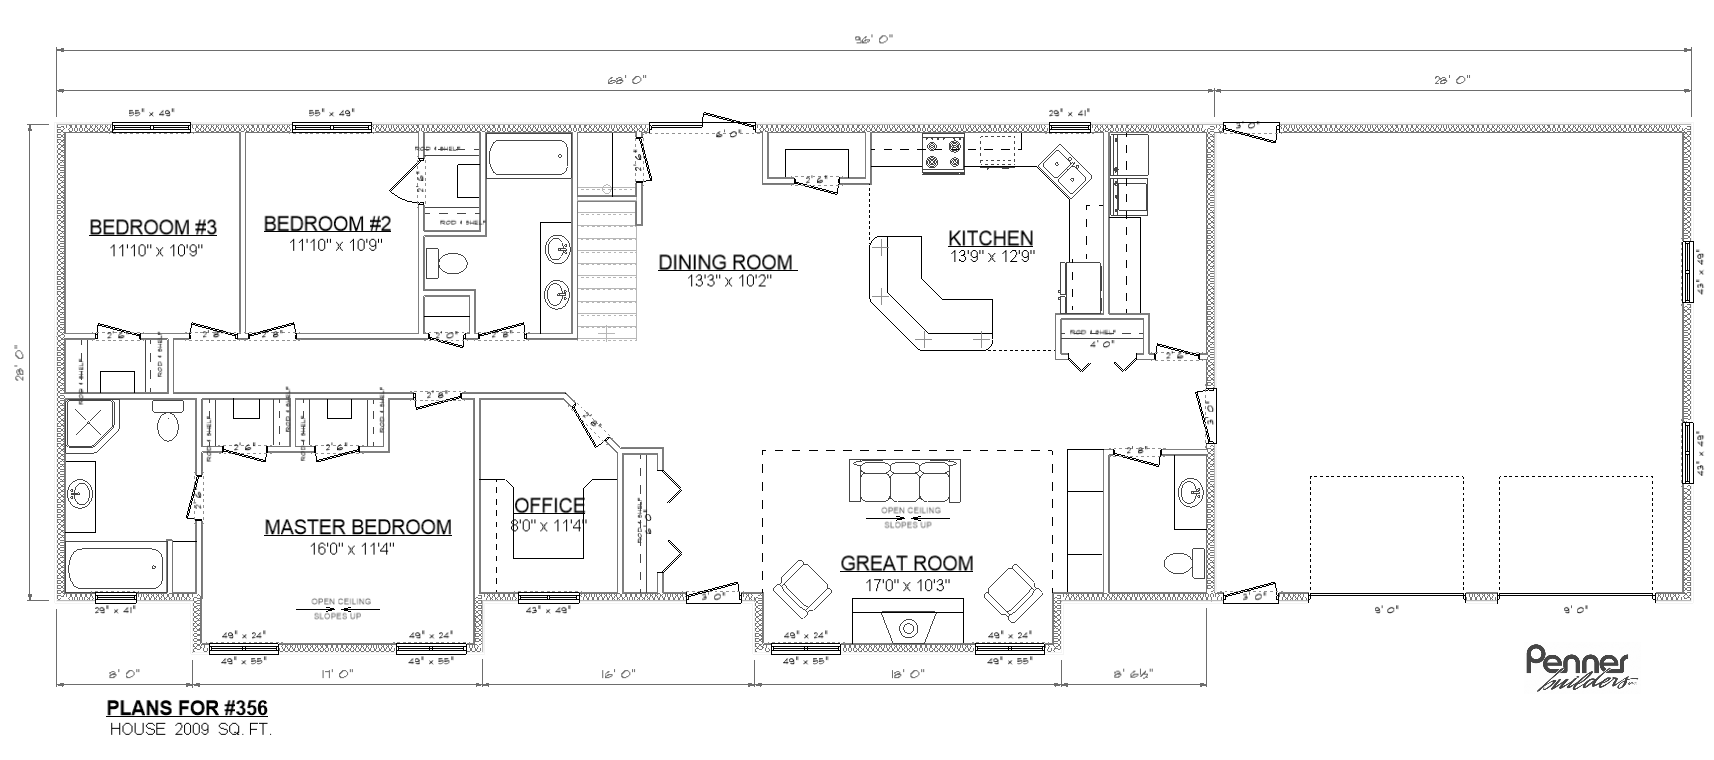 Penner Homes Floor Plan Id: 356